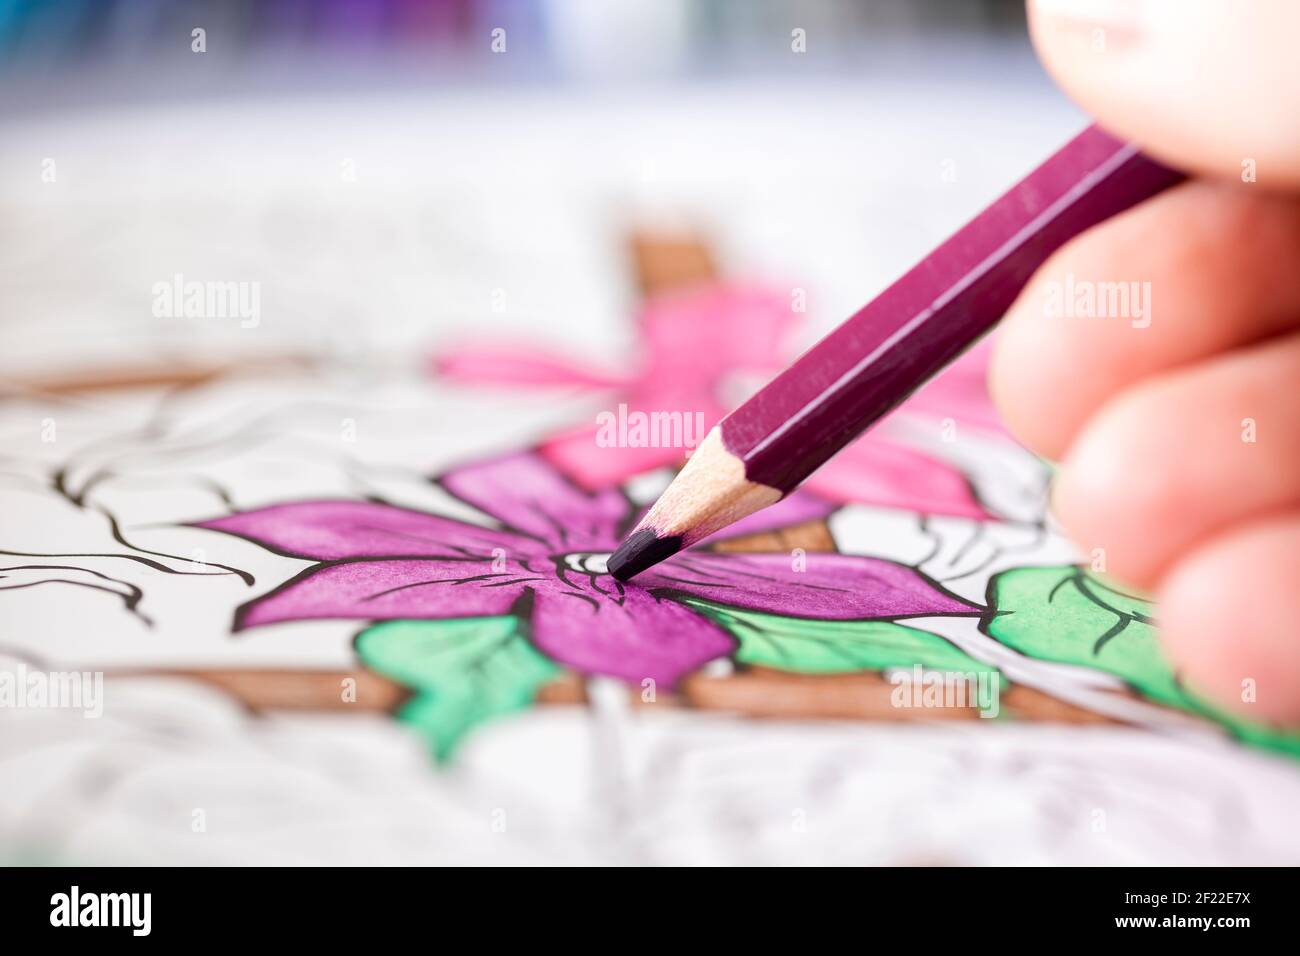 Das Nahaufnahme Porträt der Finger der Hand, die die purpurne hölzerne Bleistiftfärbung in der Blume im Malbuch für die Erwachsenen hält. Die Farbe ist schön gezeichnet Stockfoto